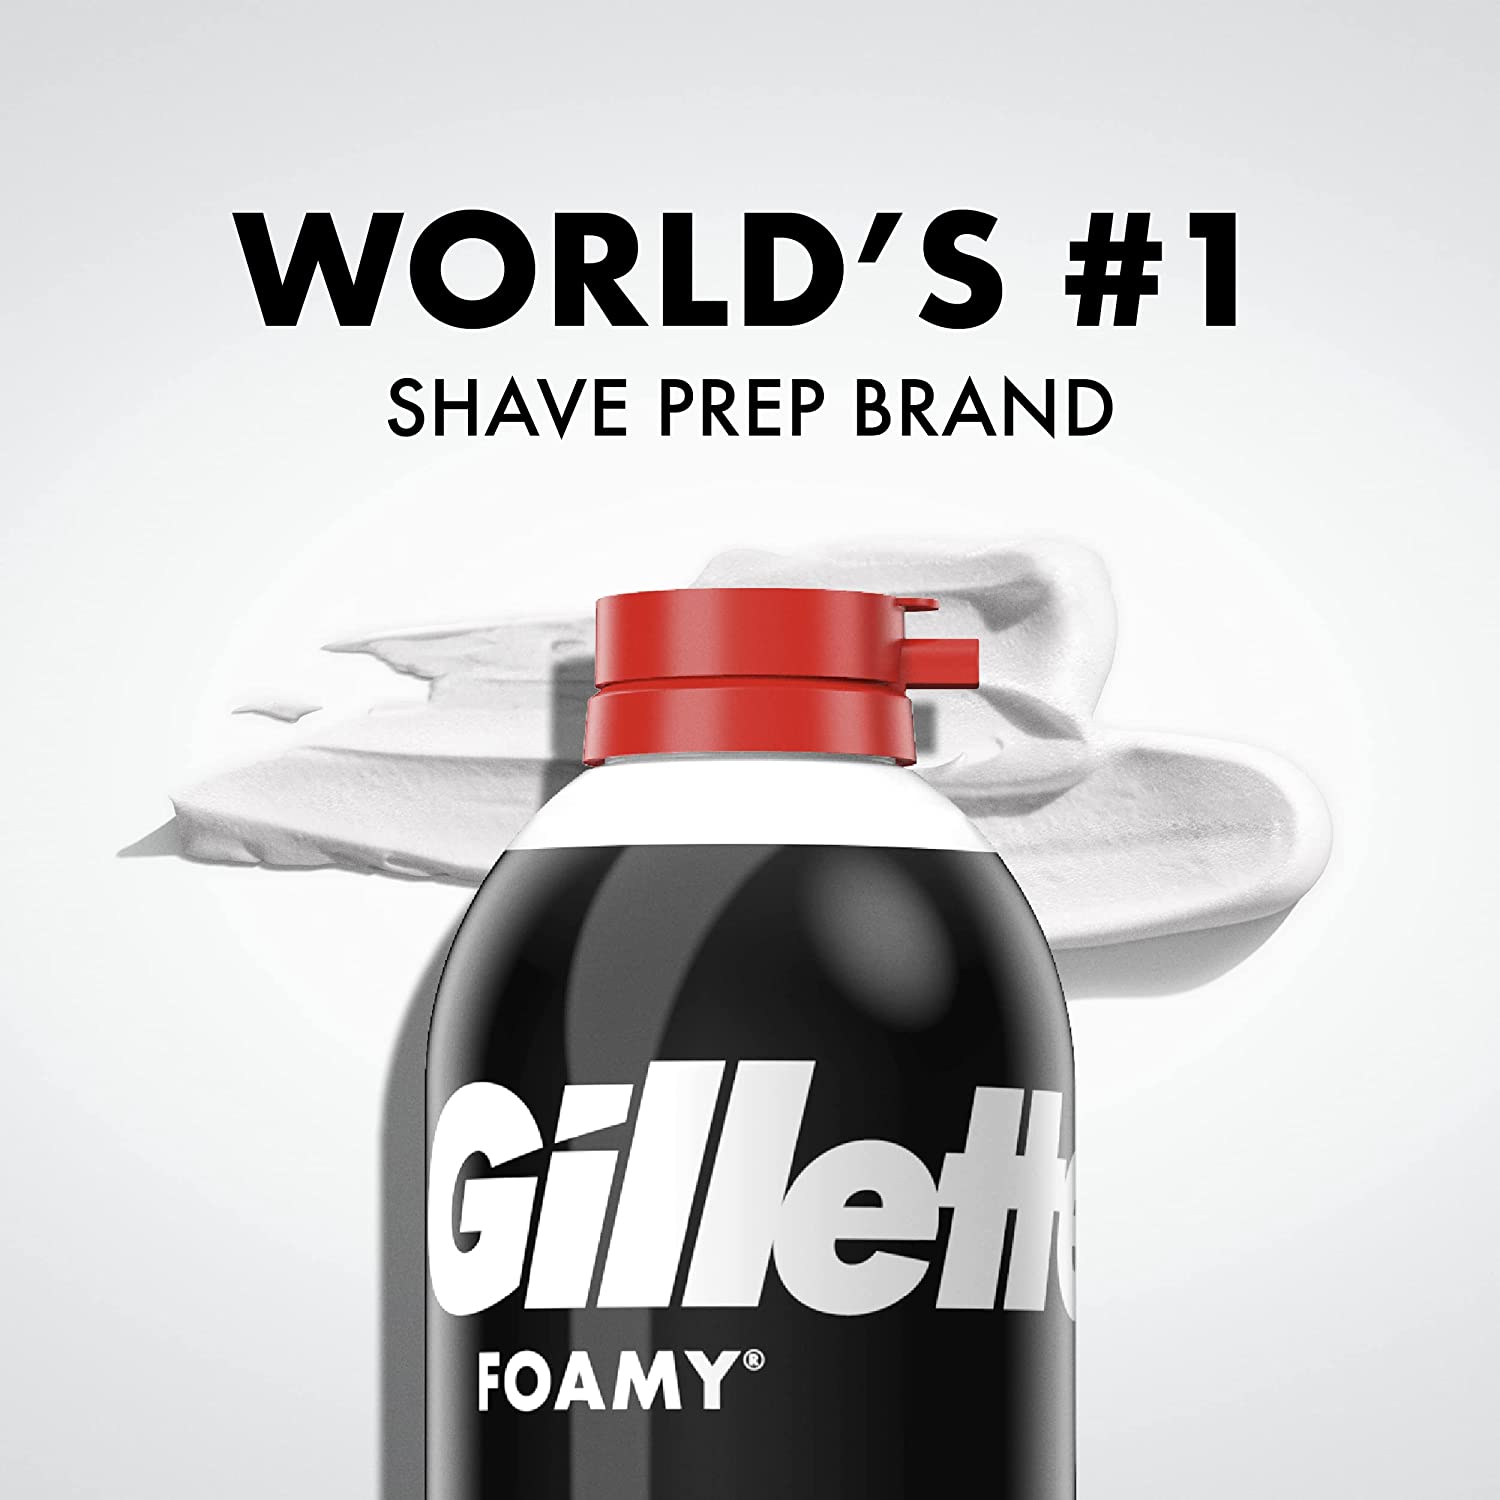 6 Gillette Foamy Regular Shave Foam Shaving Cream 11 oz each